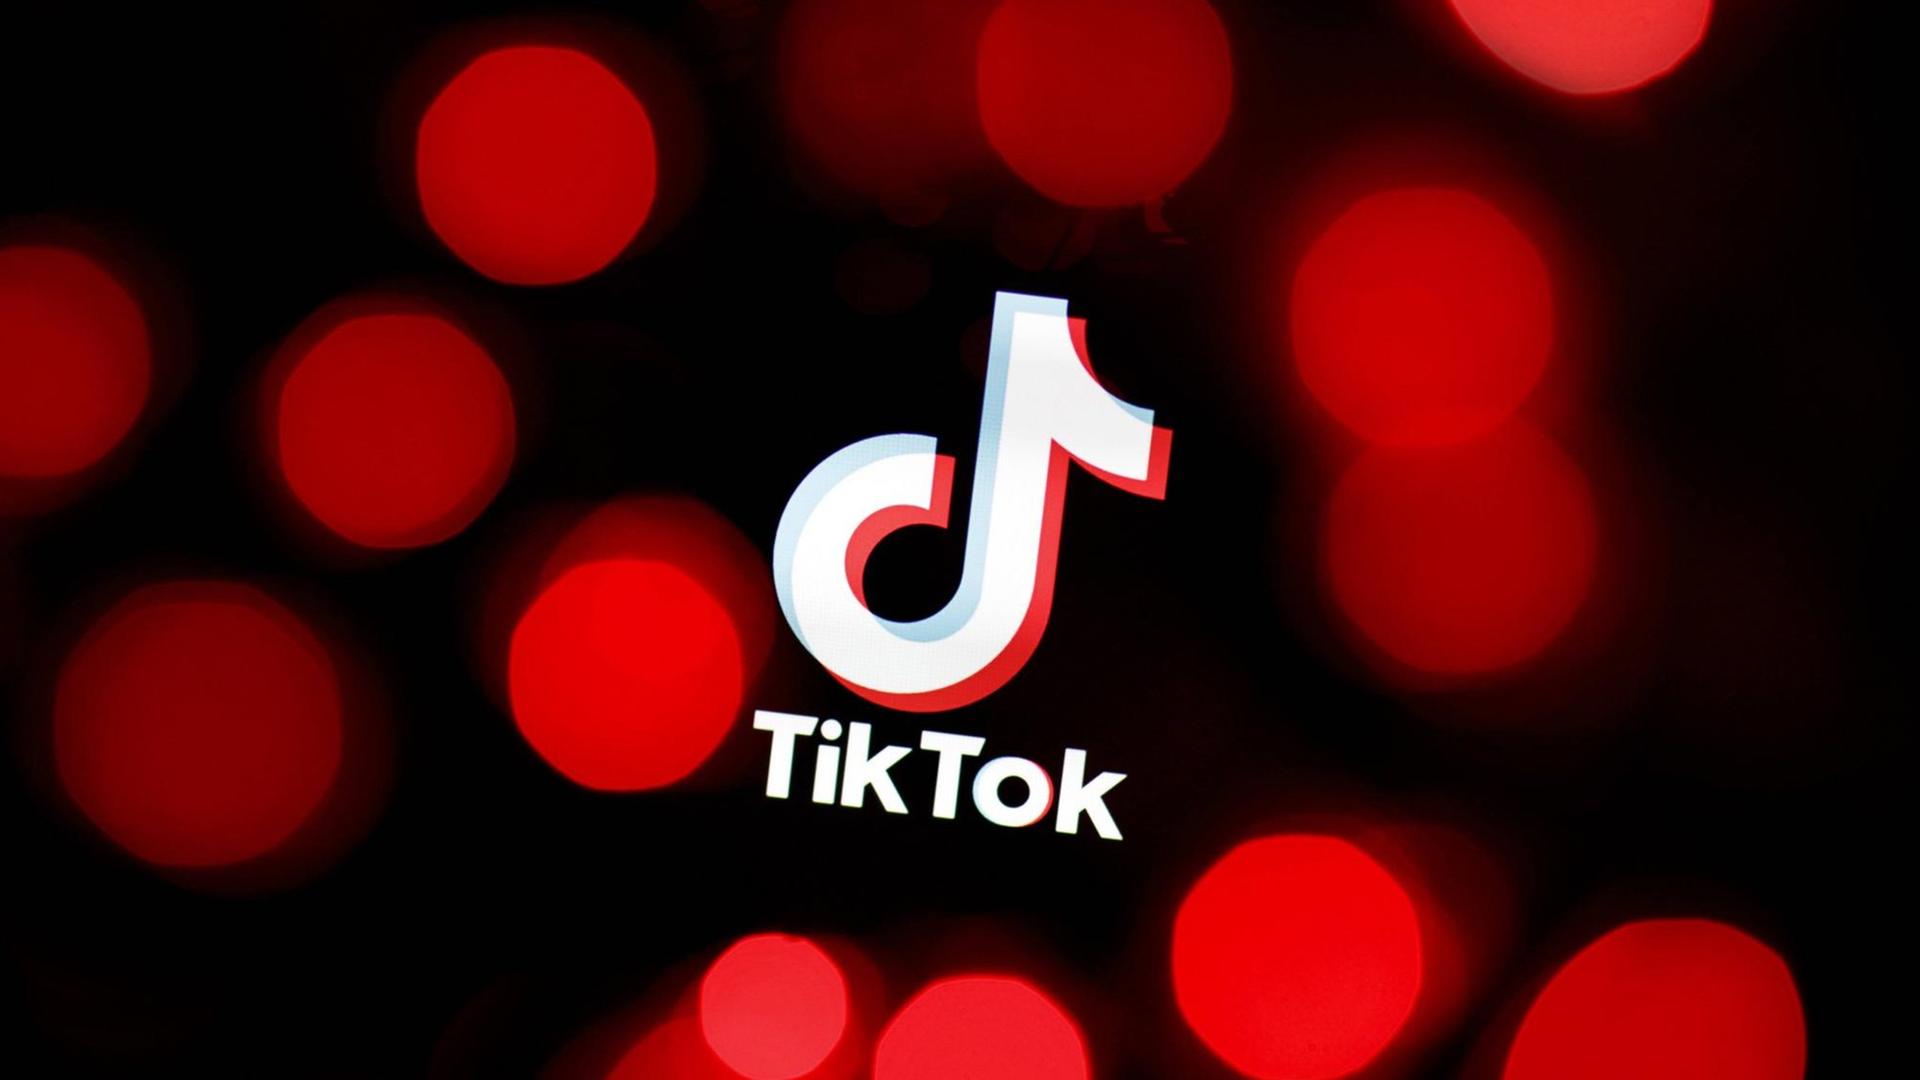 Das Bild zeigt das Logo der chinesische Video-App Tiktok.